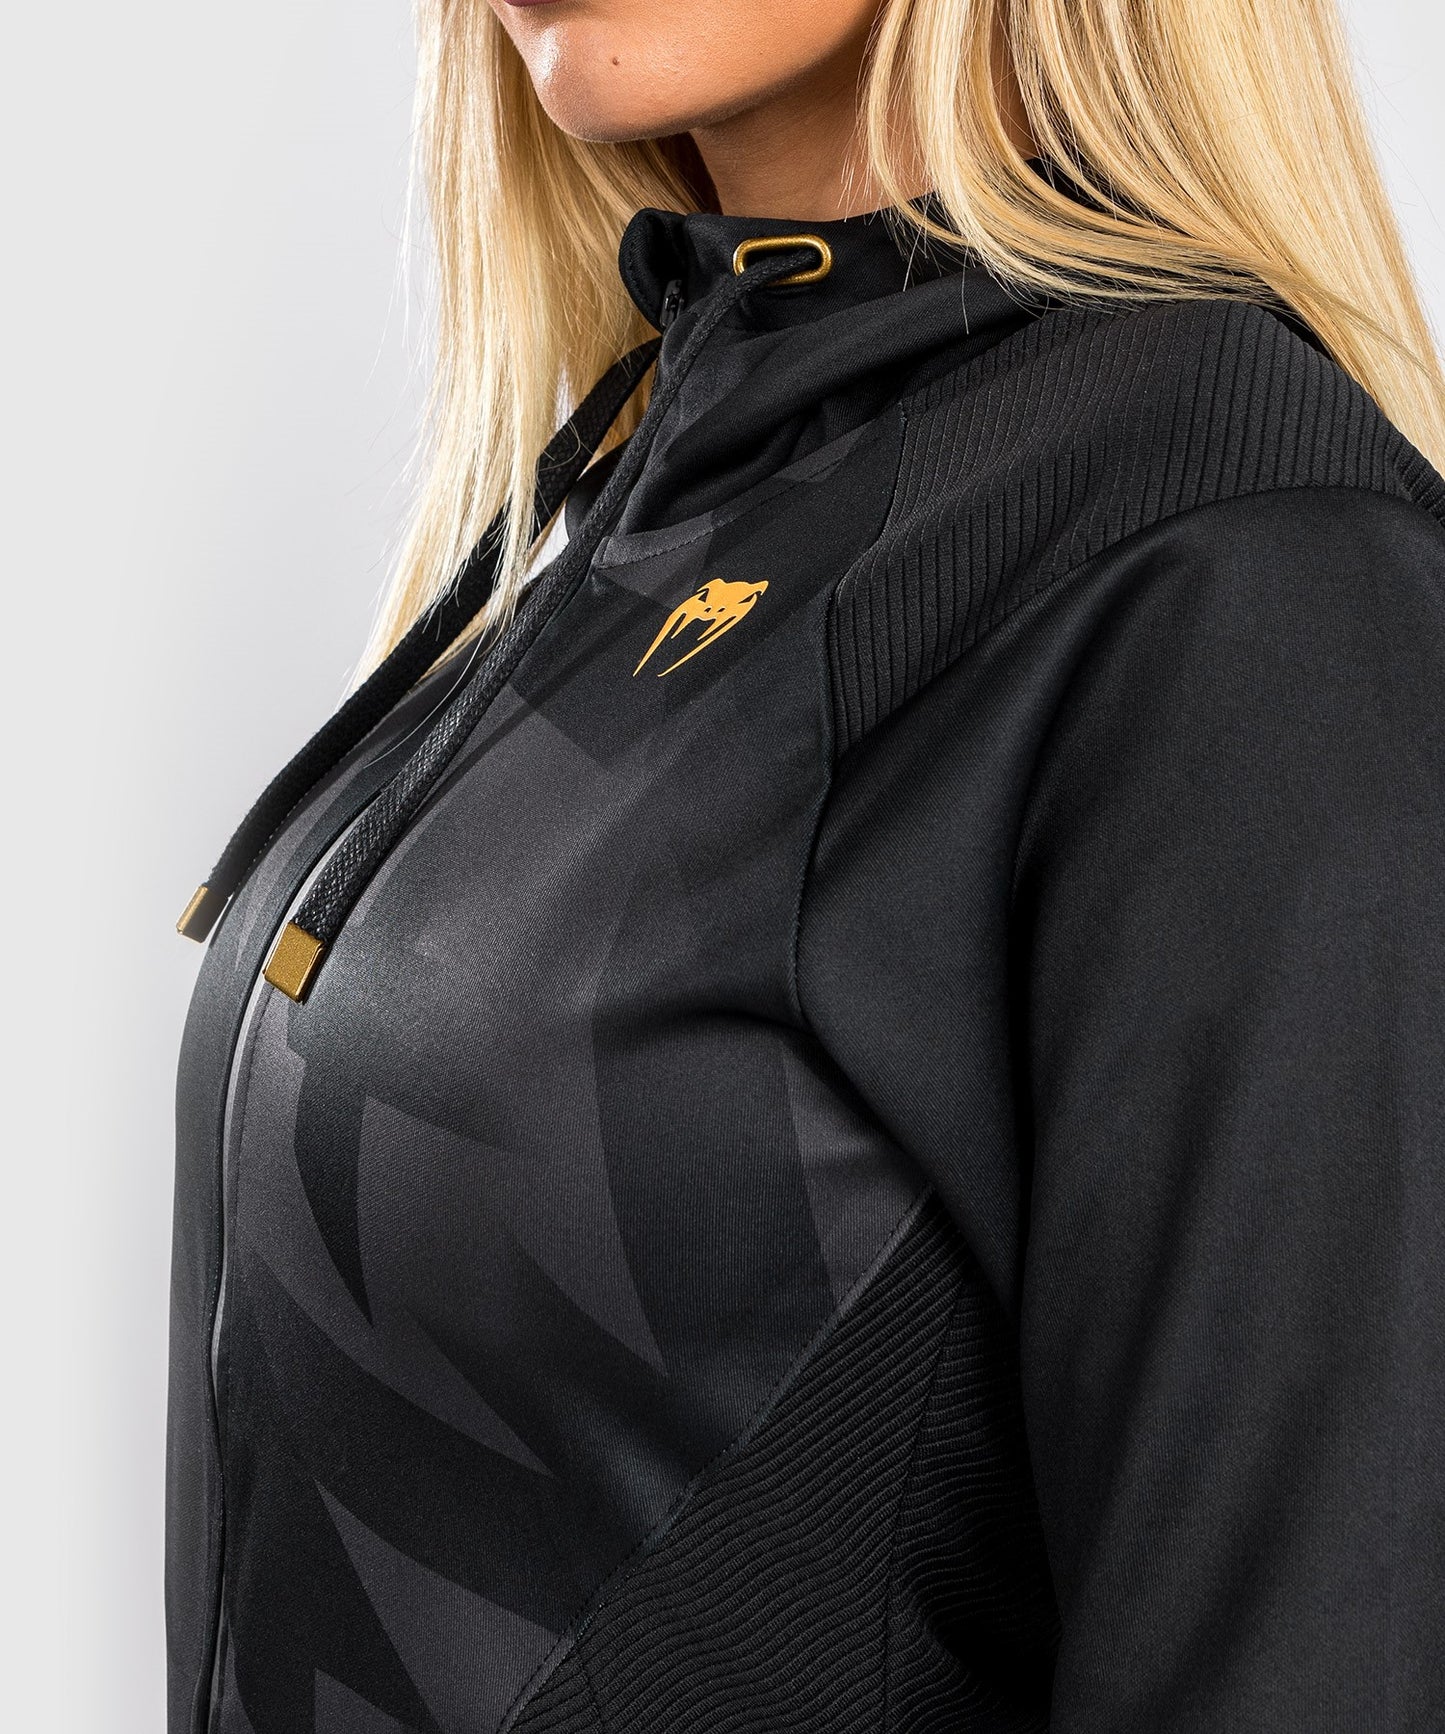 Sweatshirt à Capuche Venum Razor - Pour Femmes - Noir/Or